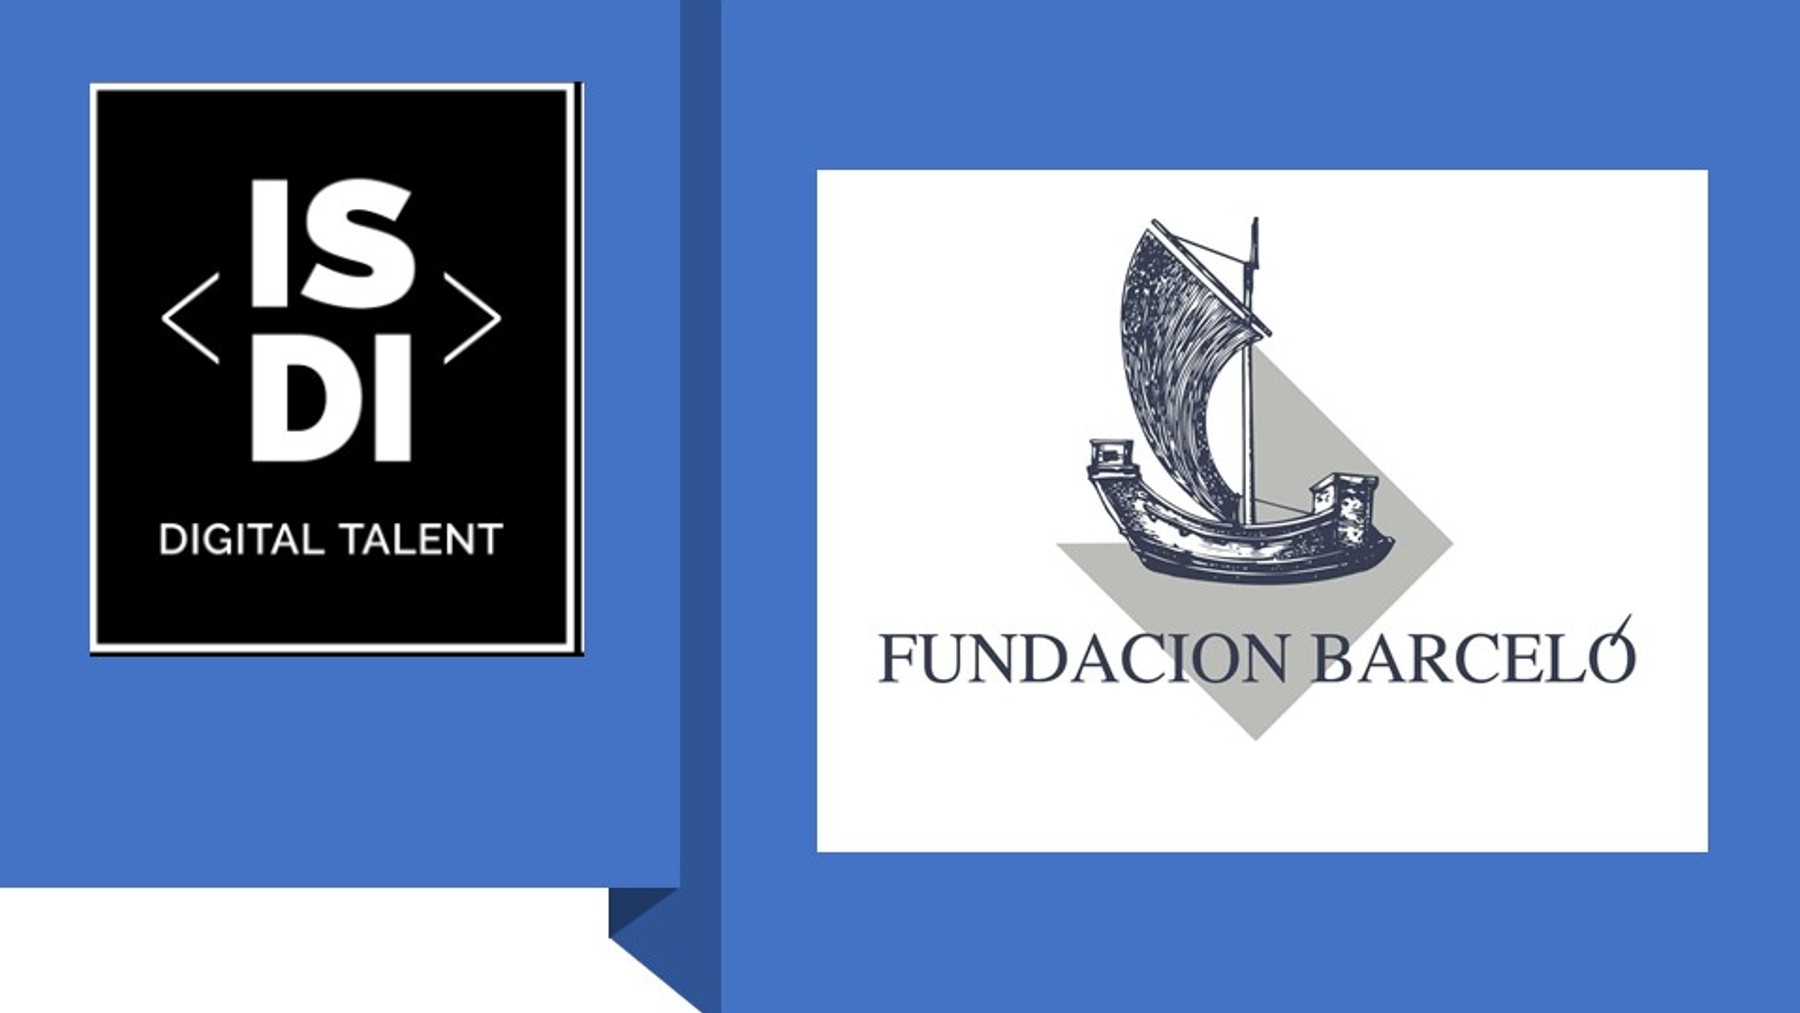 Fundación Barceló convoca una beca de excelencia digital con la escuela de negocios ISDI.